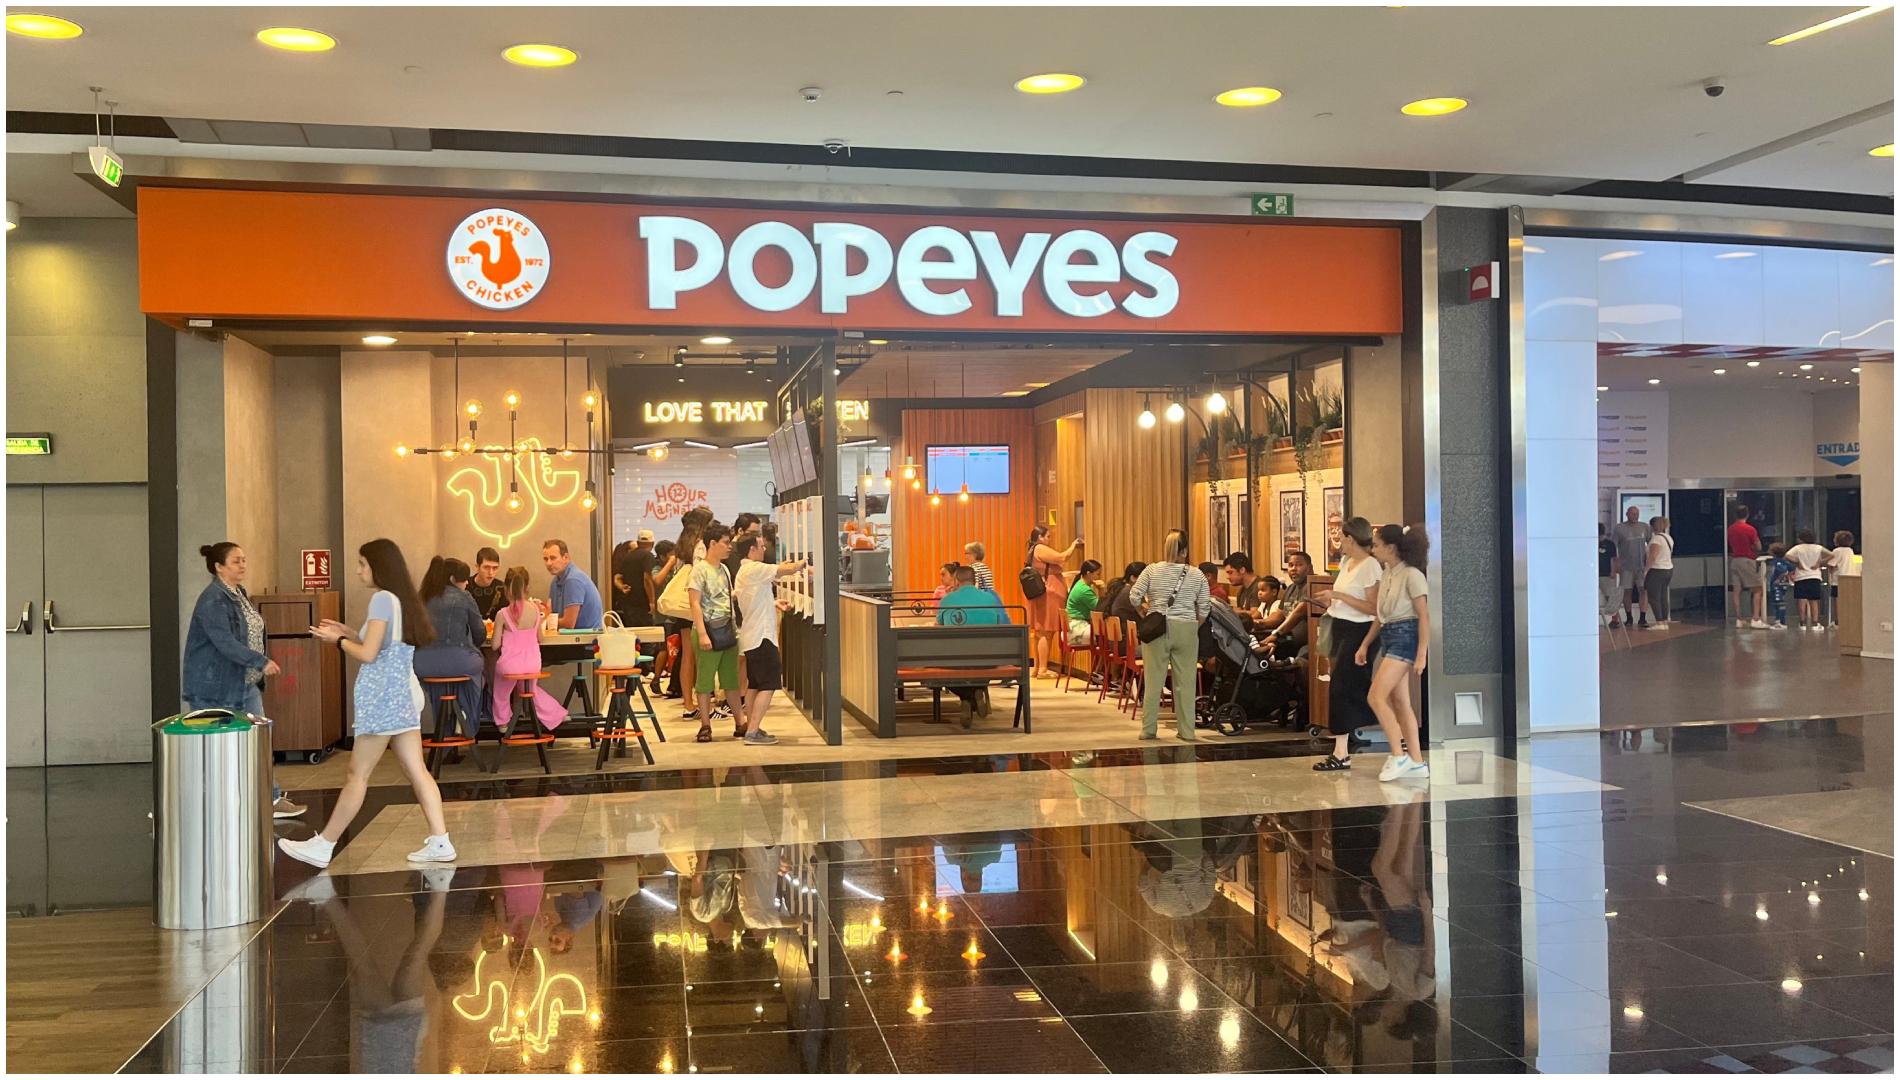 El restaurante Popeyes que abrió a principios de julio (foto: Marineda City)